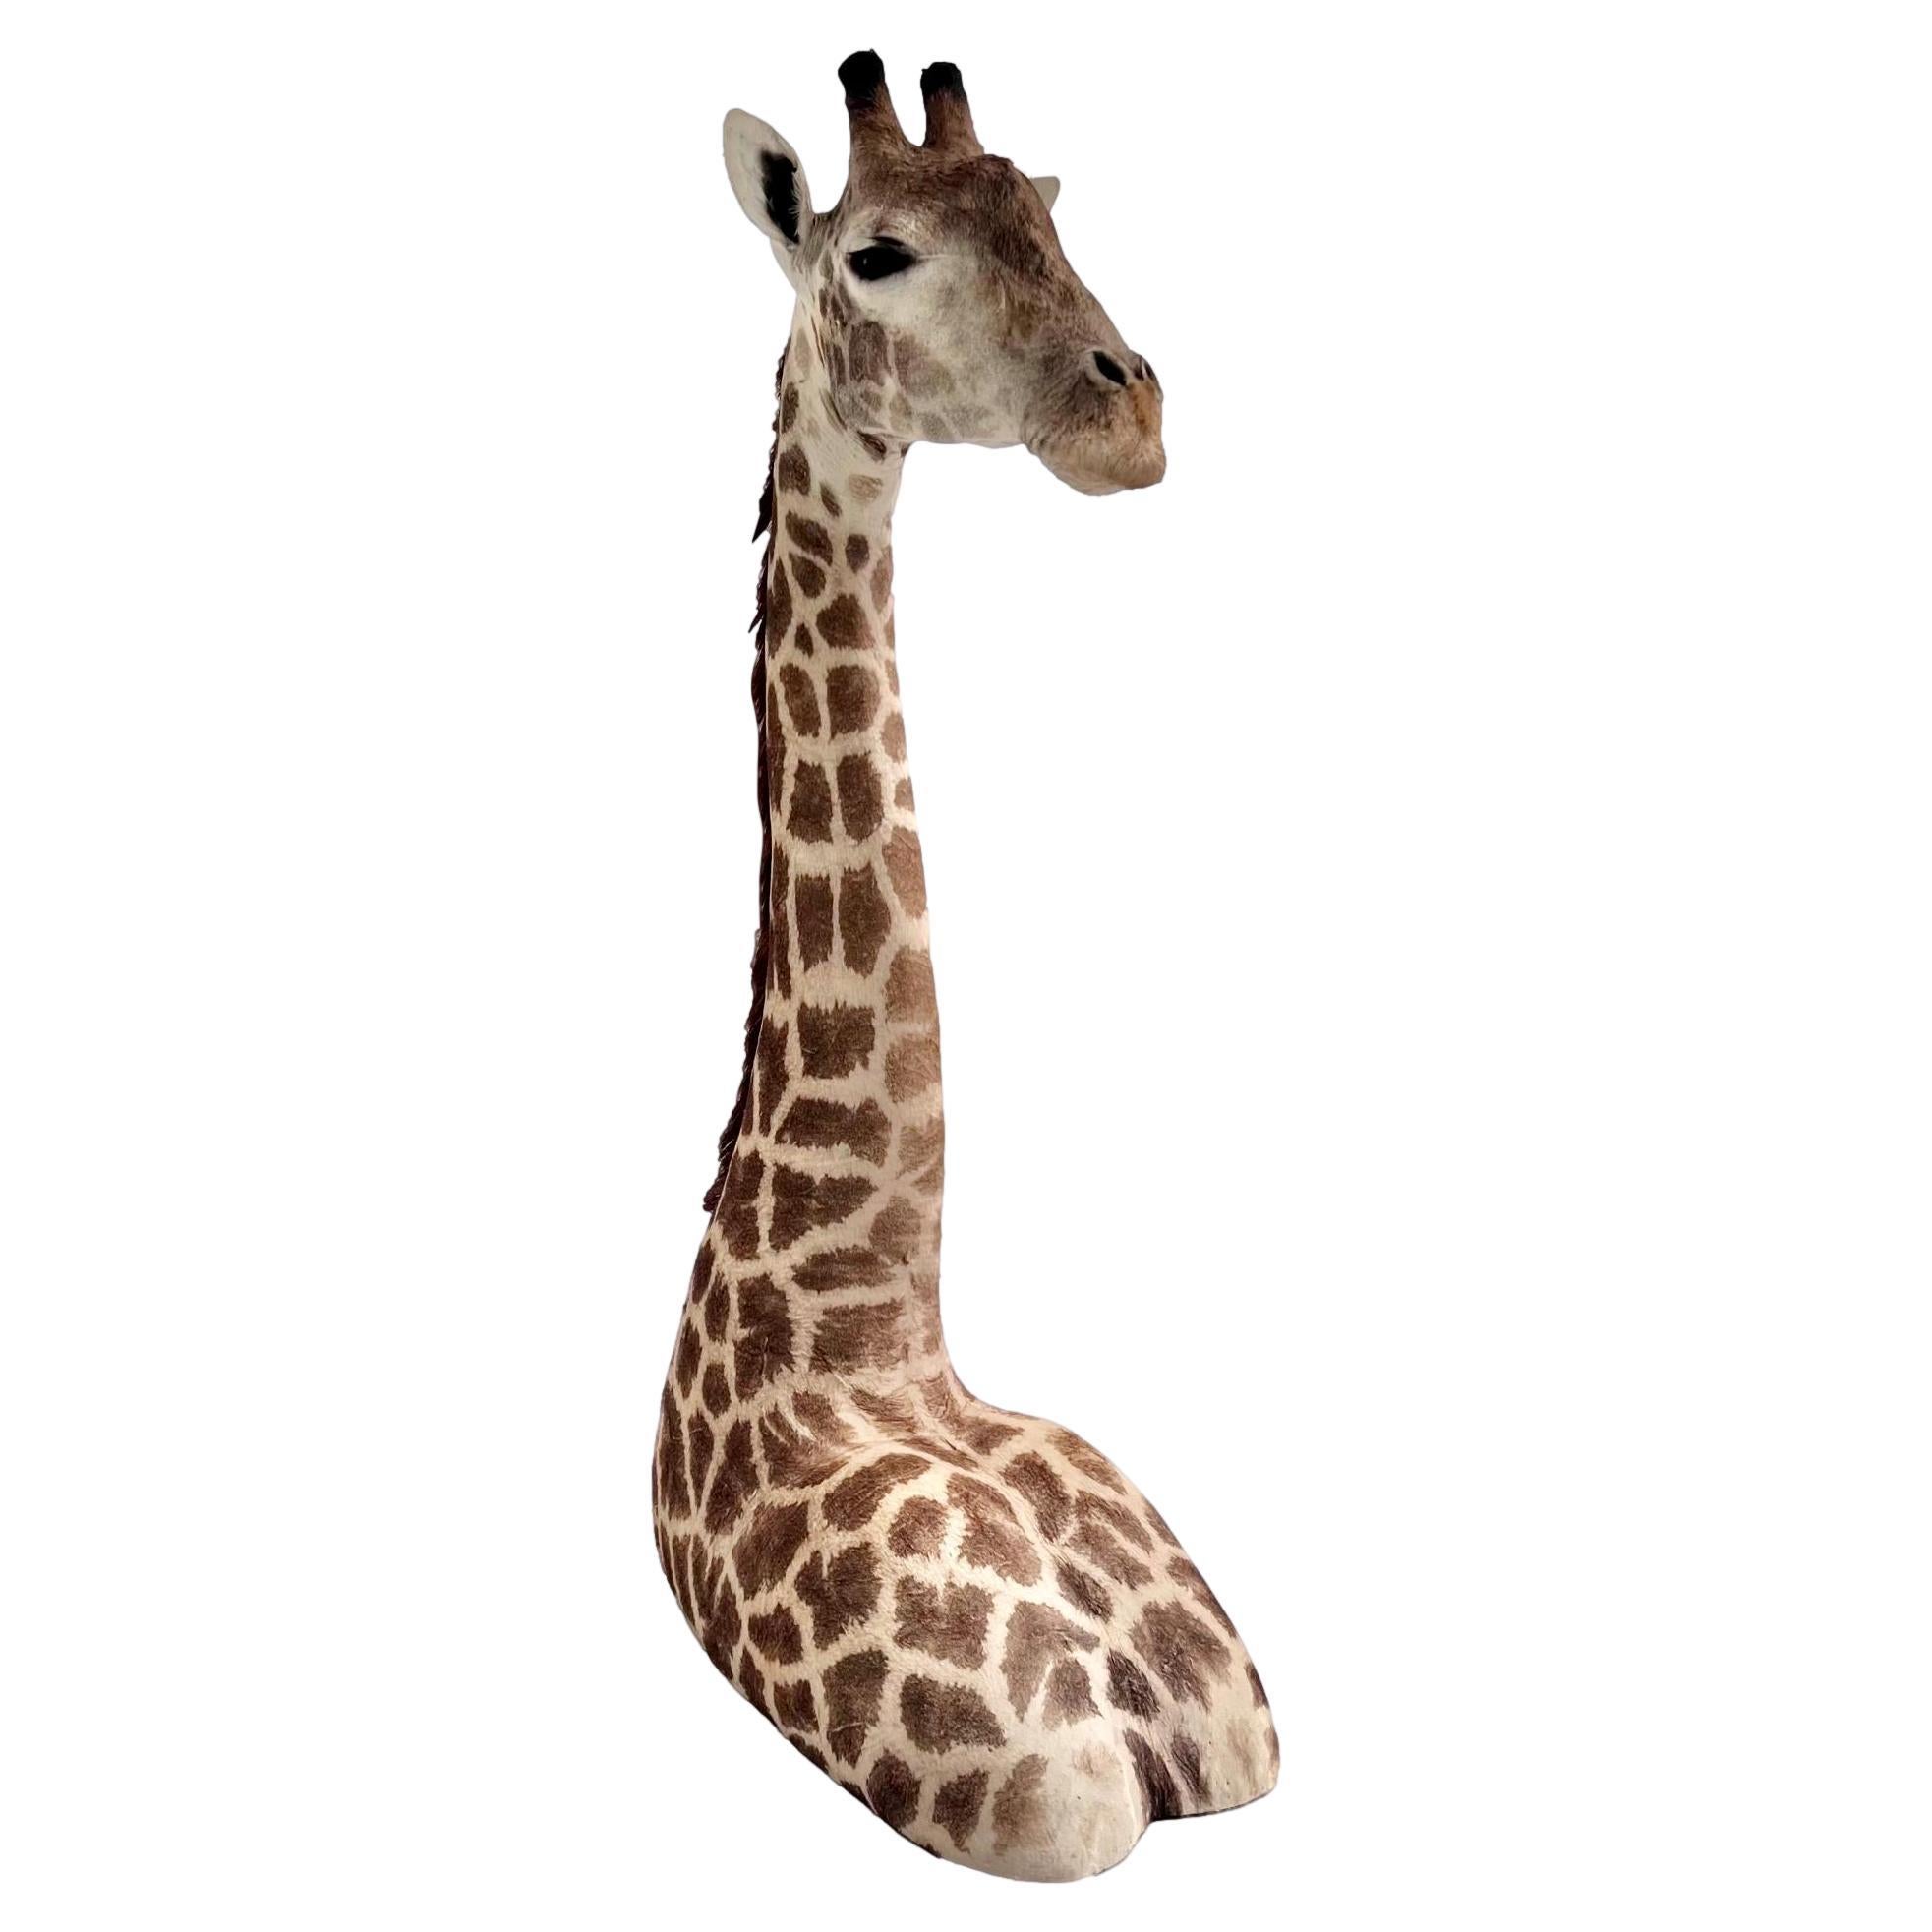 Majestic vintage Giraffe taxidermy mount. Über 1,80 m groß. In sorgfältiger Handarbeit von geschickten Kunsthandwerkern hergestellt, die dafür sorgten, dass jedes Detail in Perfektion festgehalten wurde.

Diese Halterung ist ein einzigartiger und